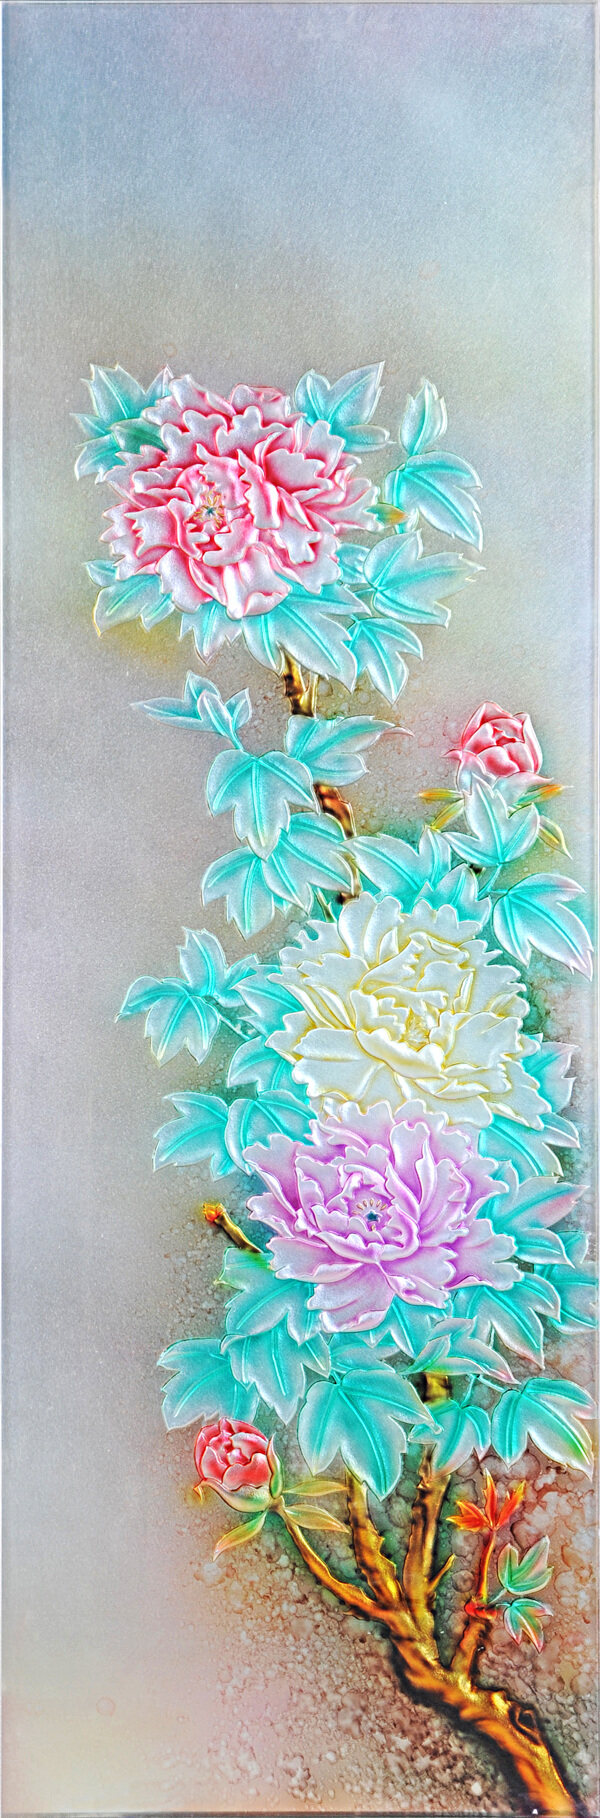 彩色浮雕花卉背景墙